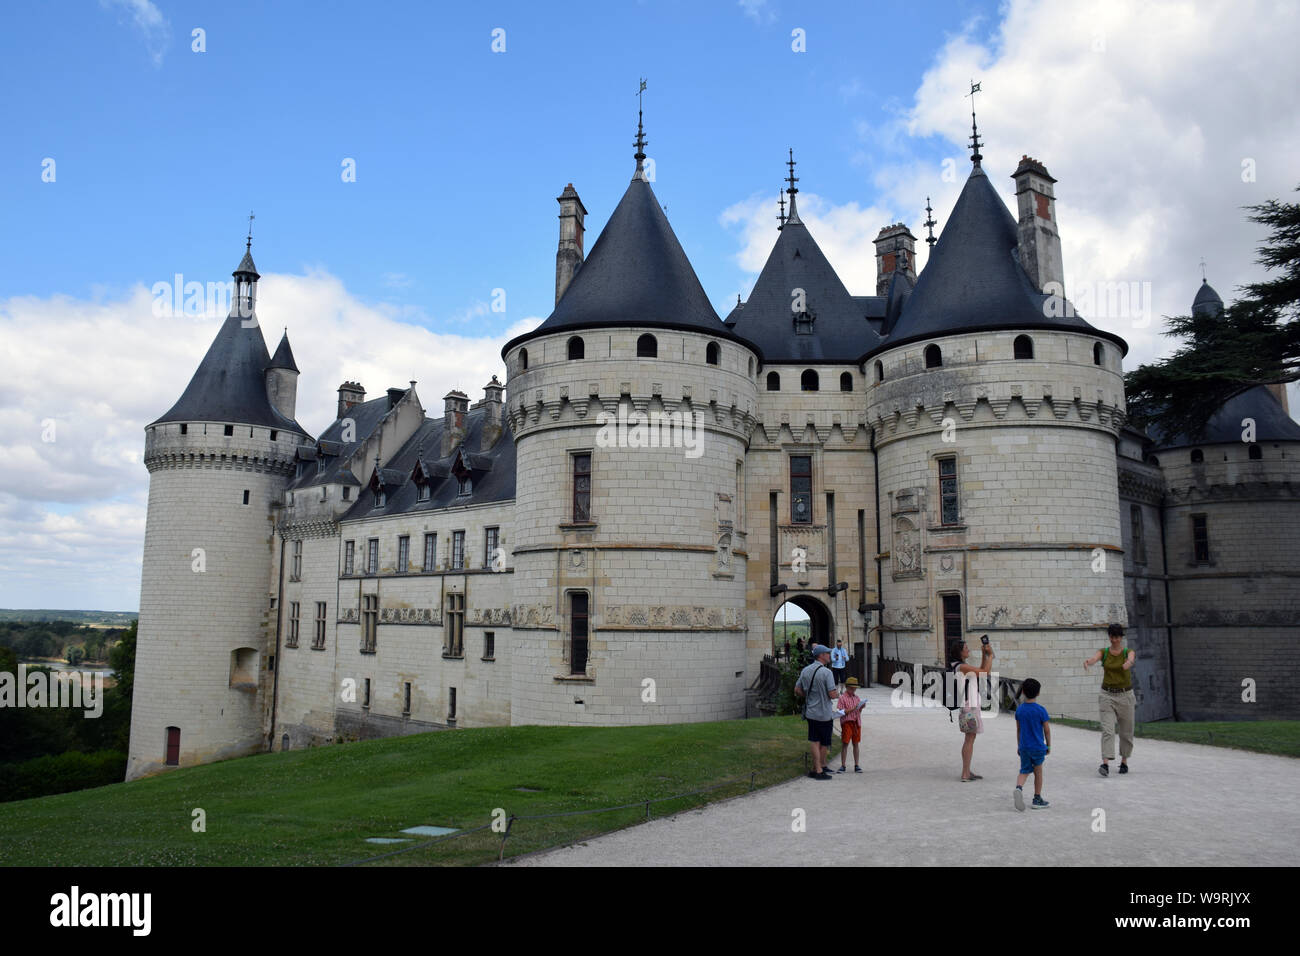 Chaumont-sur-Loire chateau, Loire Valley, France July 2019 Stock Photo